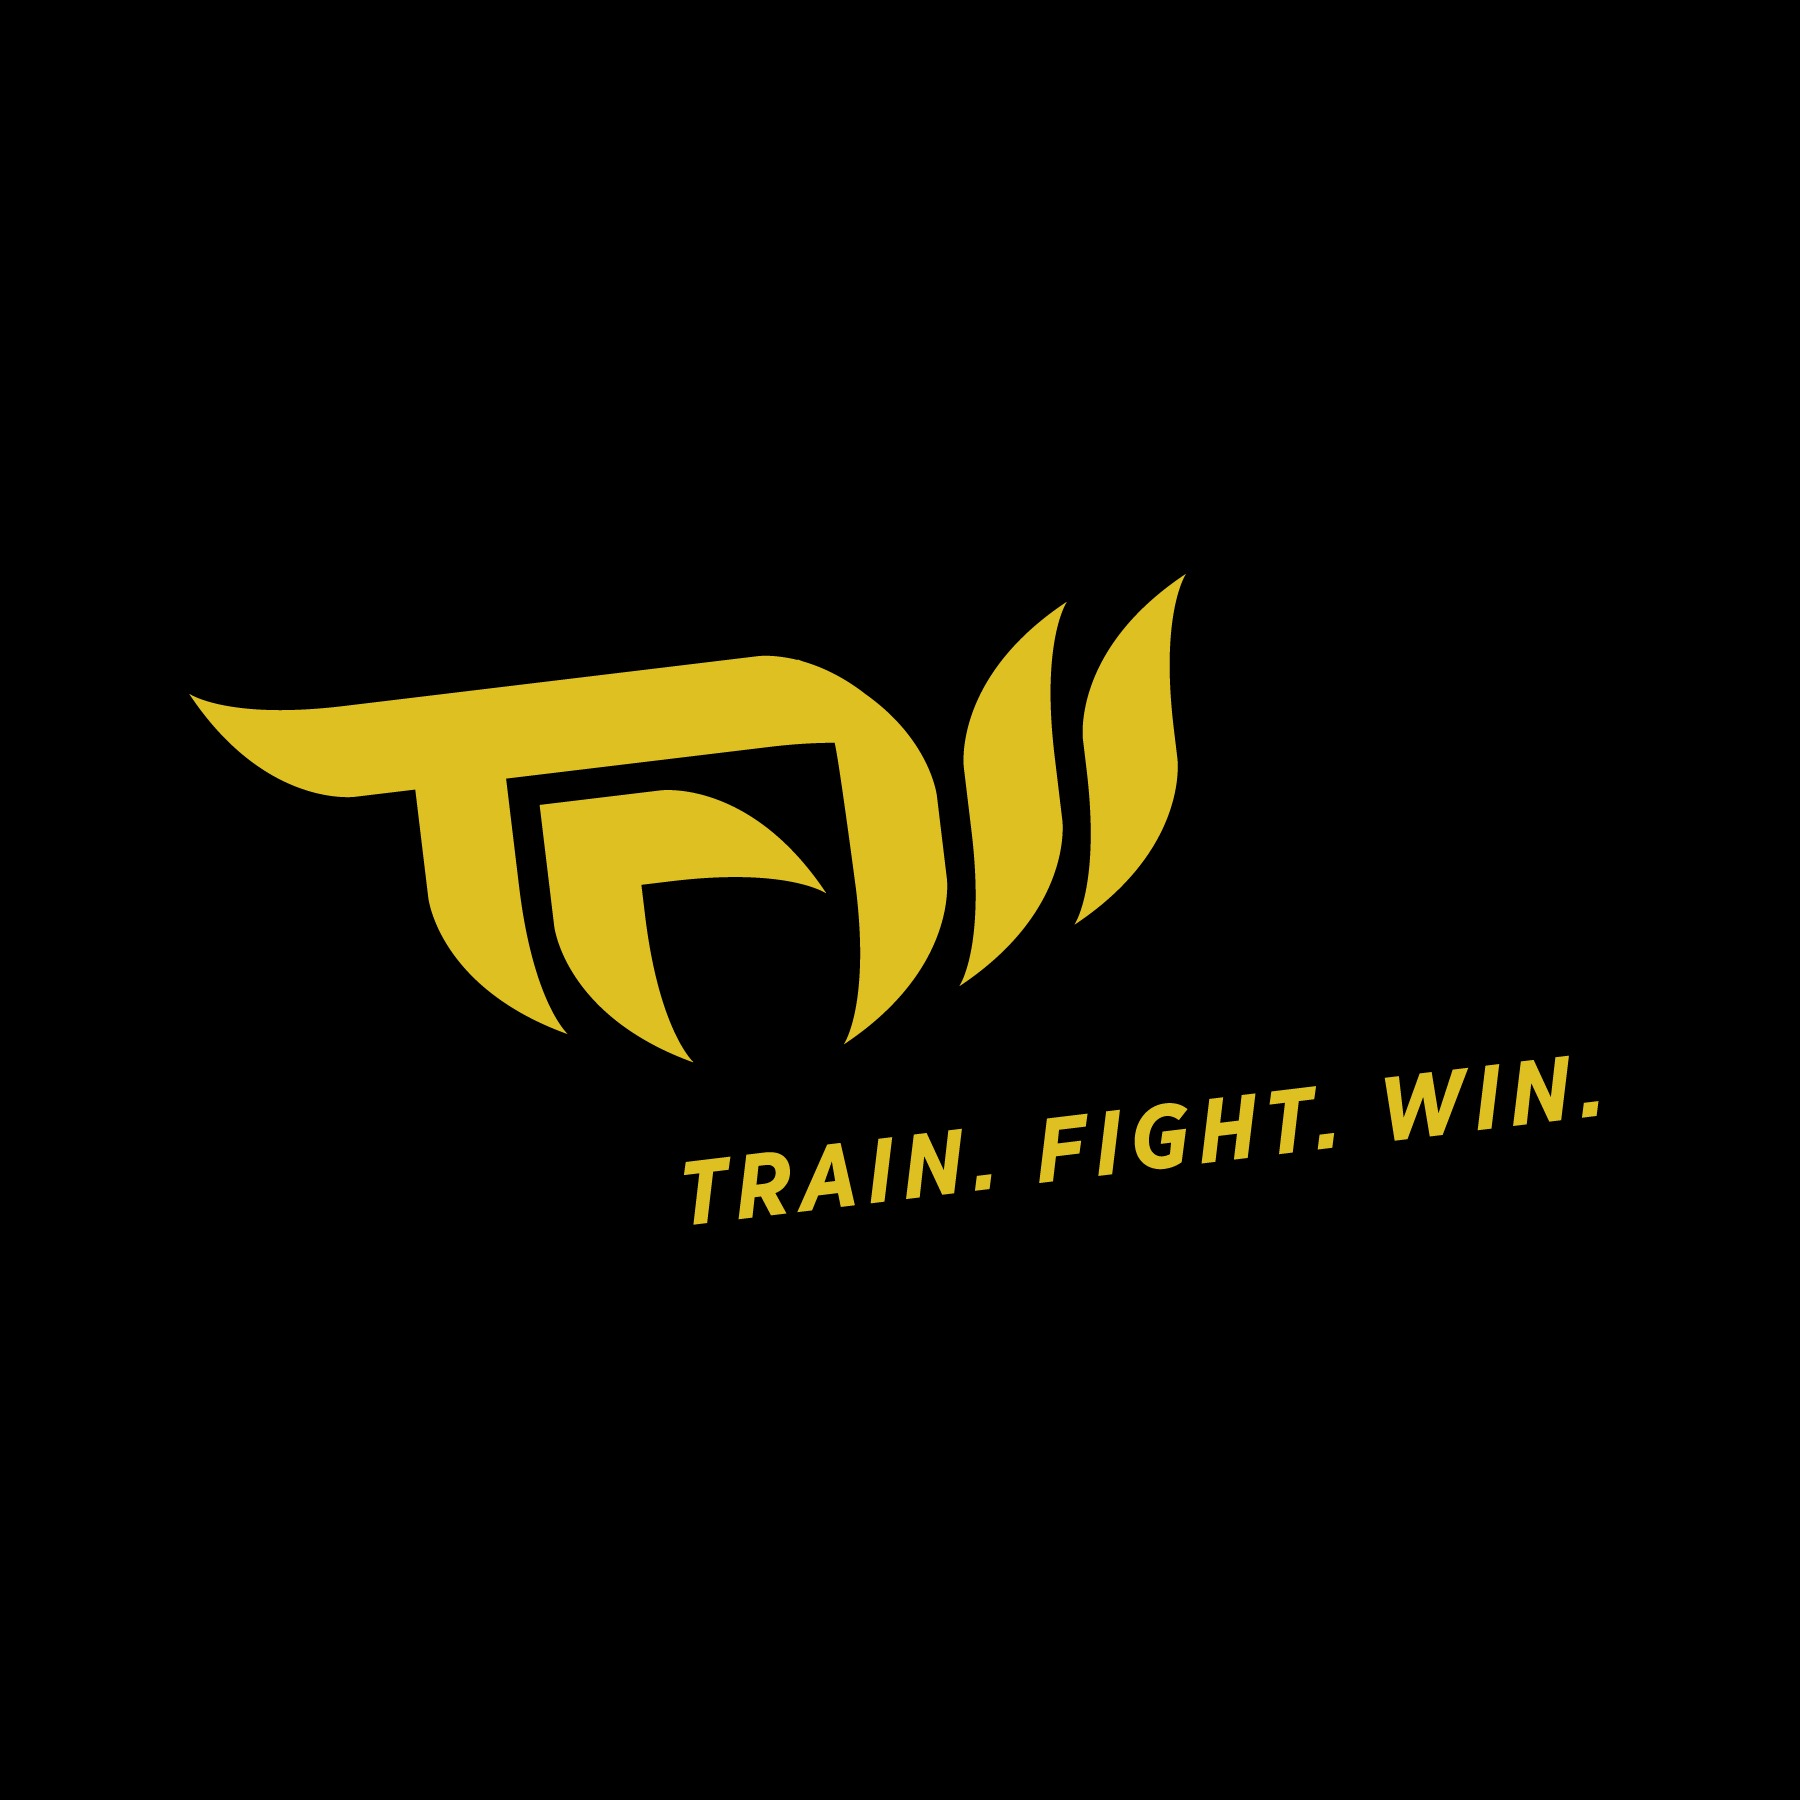 Train. Fight. Win.